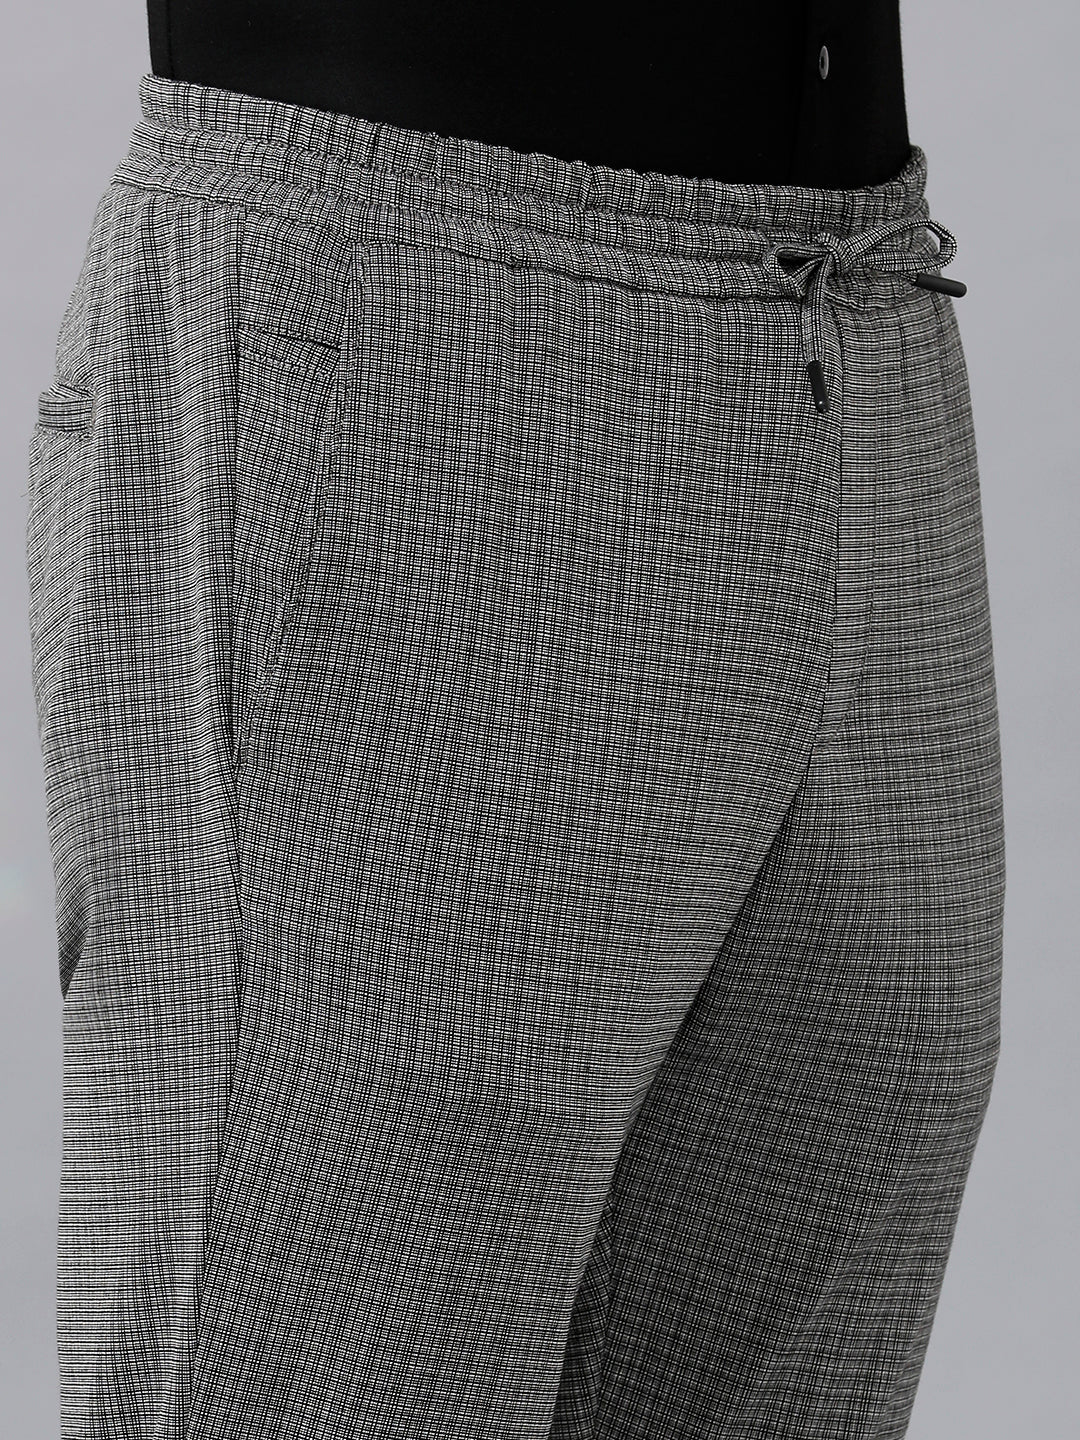 Men Fashion Jog Trousers In Checks